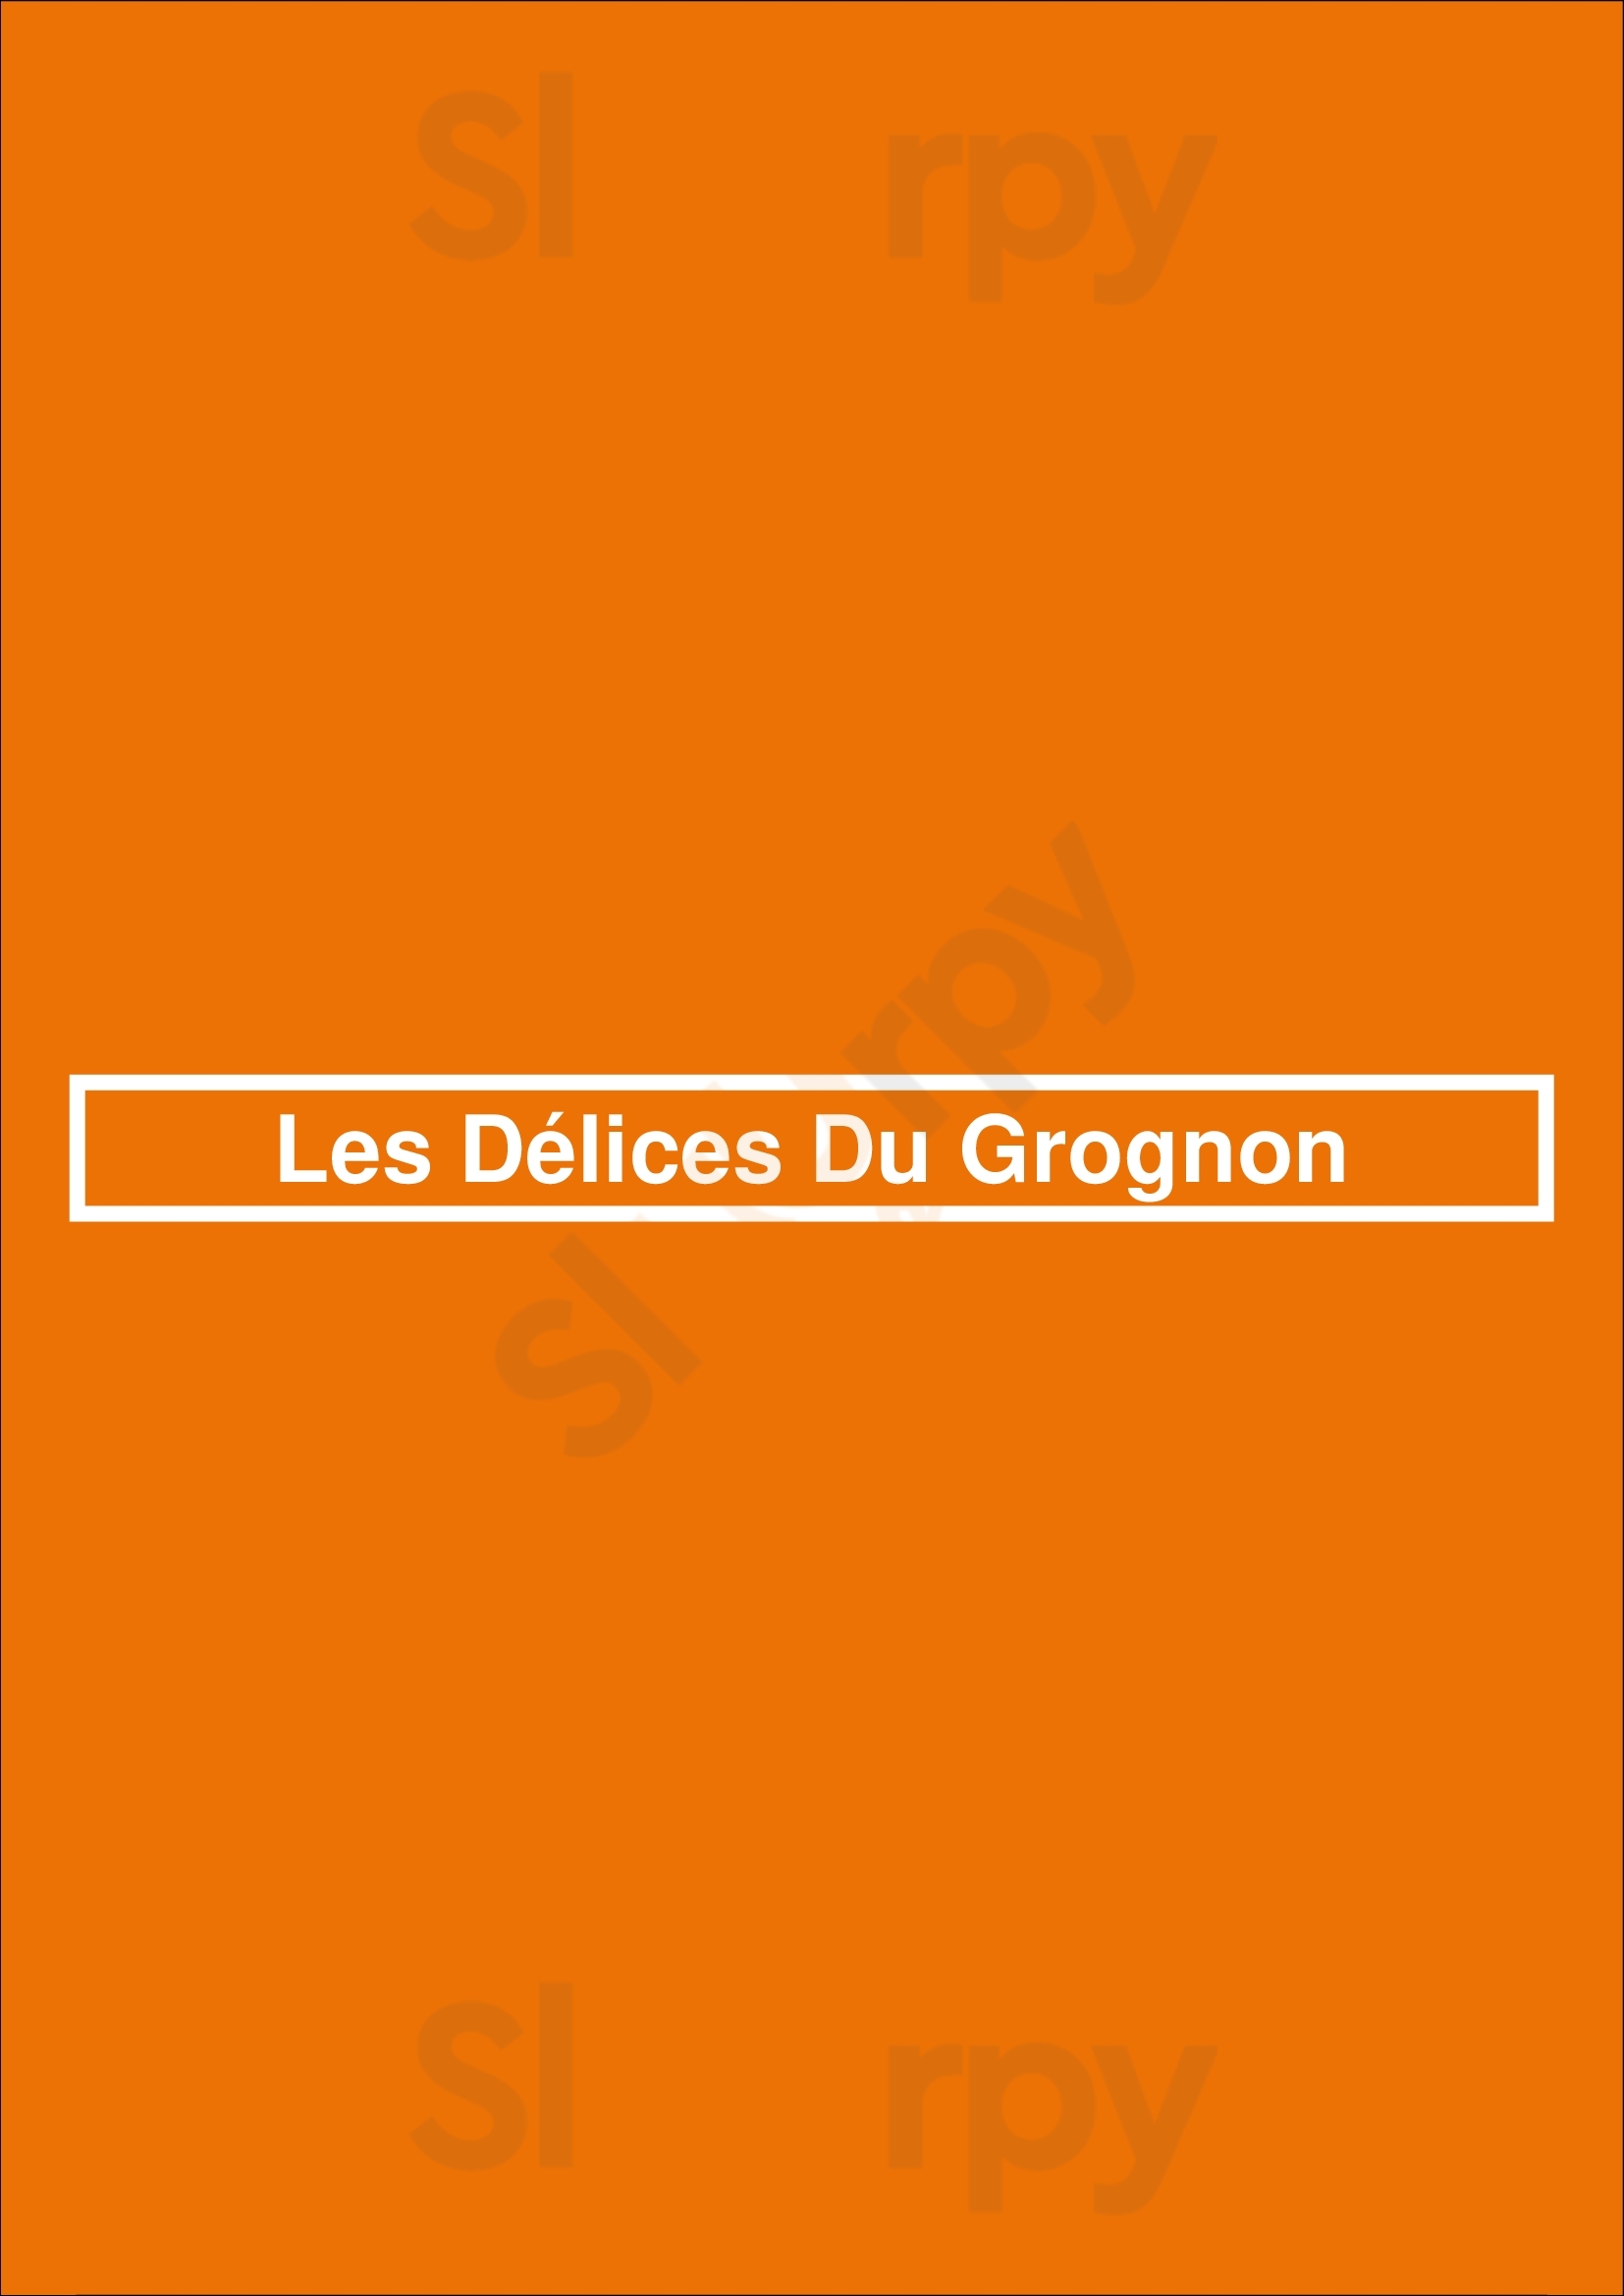 Les Délices Du Grognon Namur Menu - 1